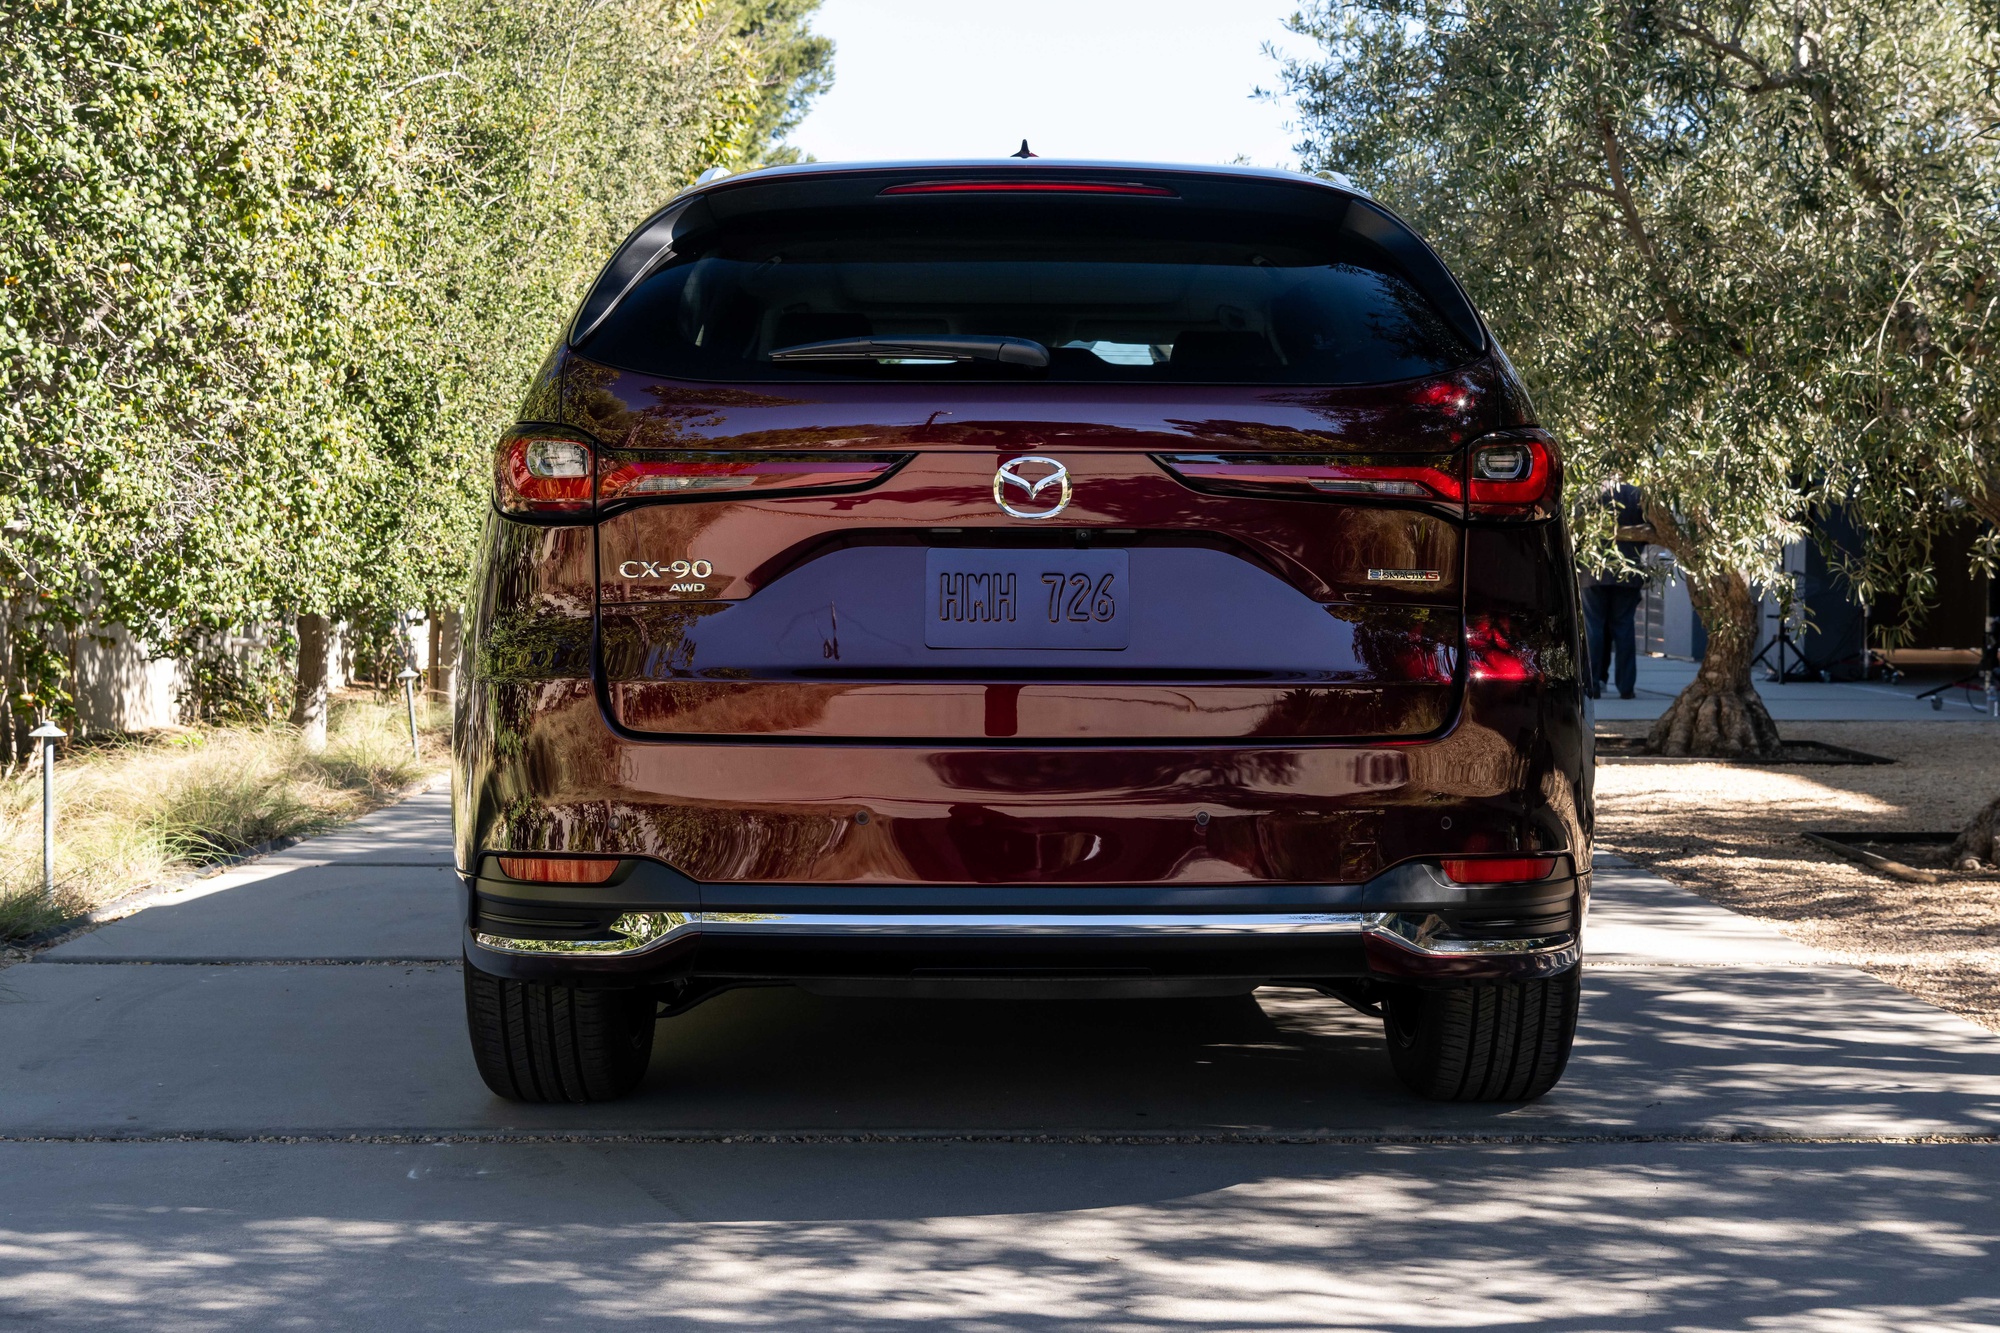 Chi tiết Mazda CX-90, đối thủ mới trong phân khúc SUV cỡ trung - Ảnh 4.